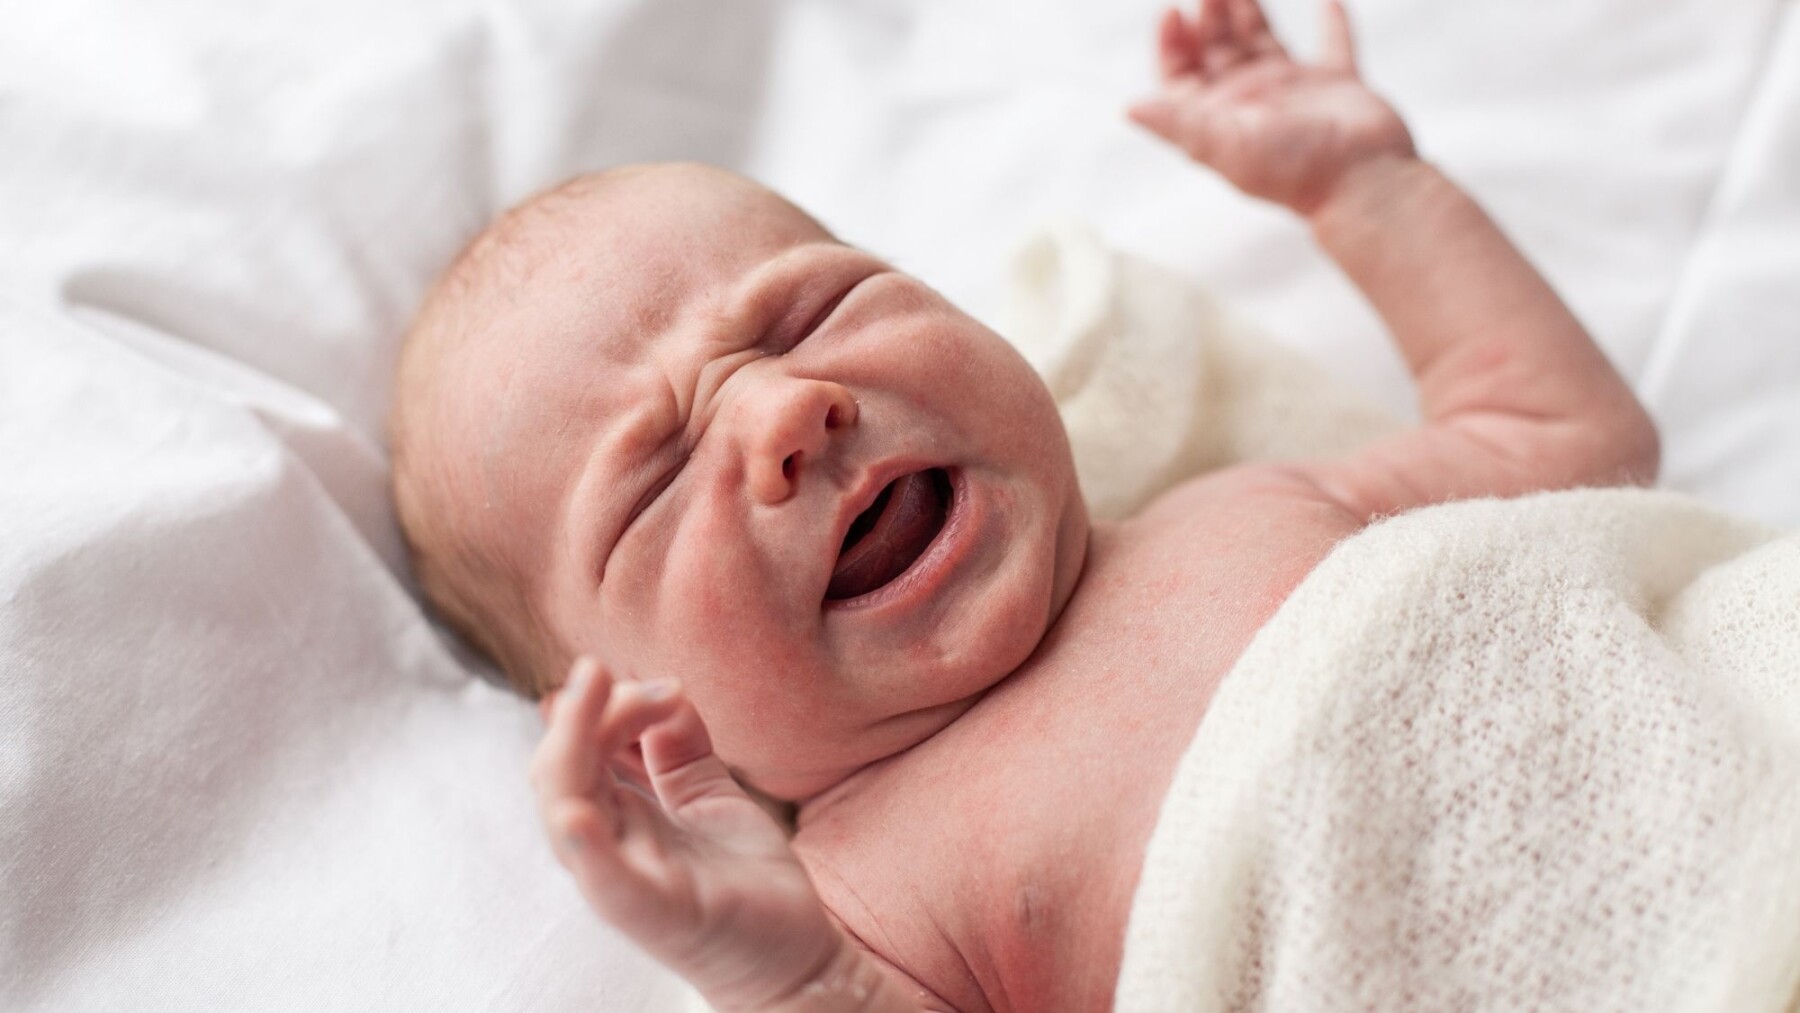 4 questions sur les pleurs du nourrisson